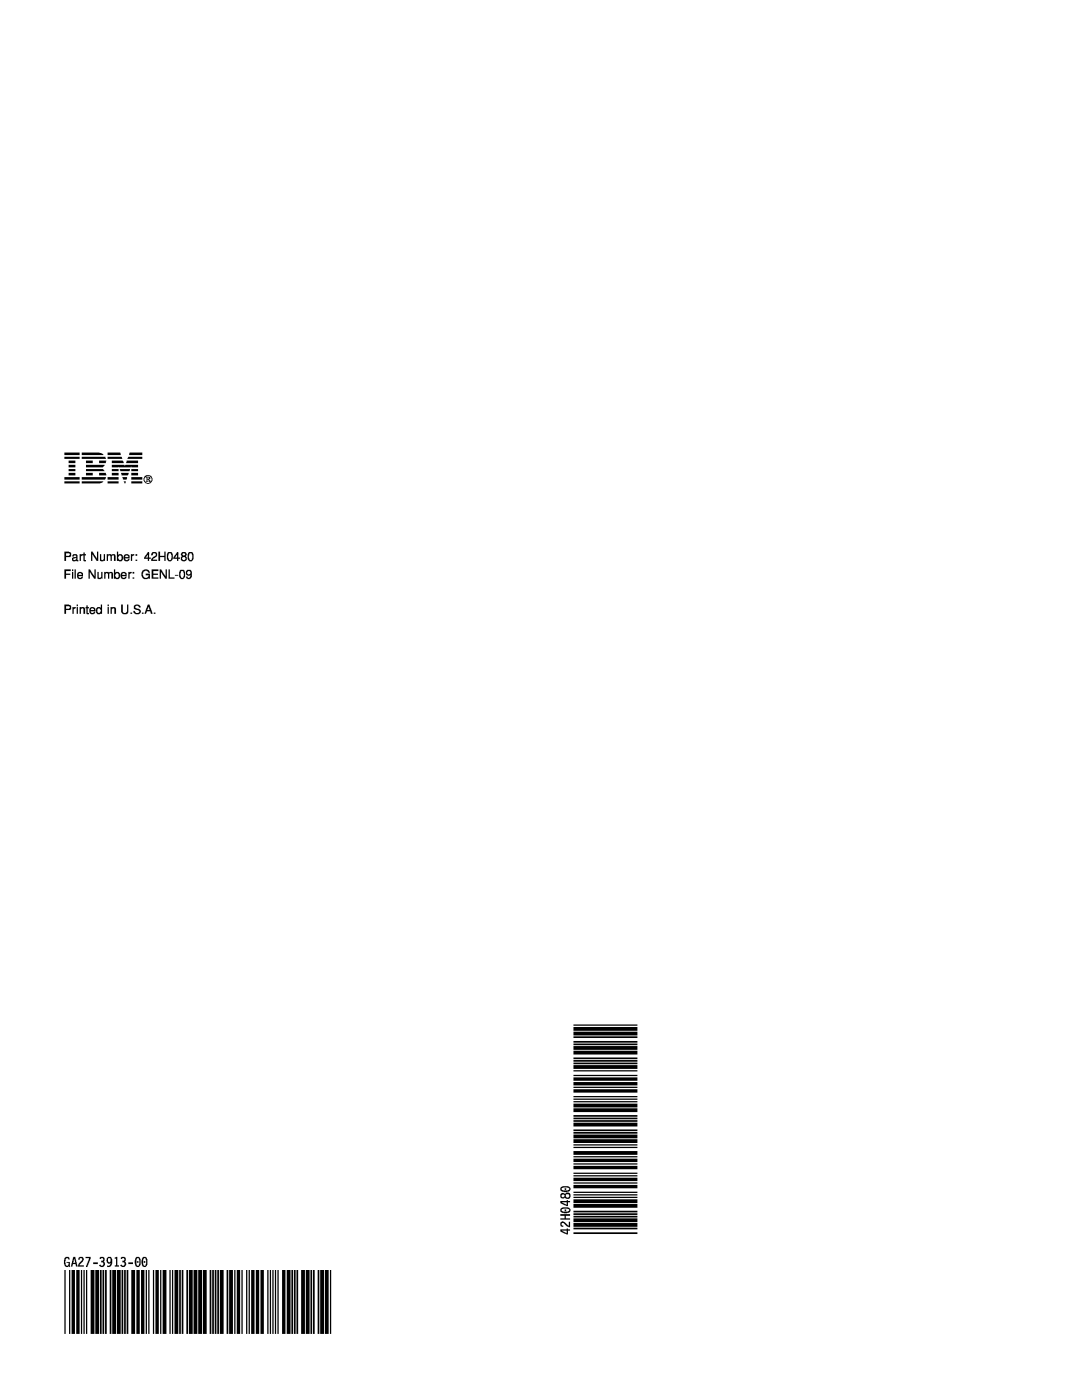 IBM 3270 manual Ibm, 42Hð48ð GA27-3913-ðð 